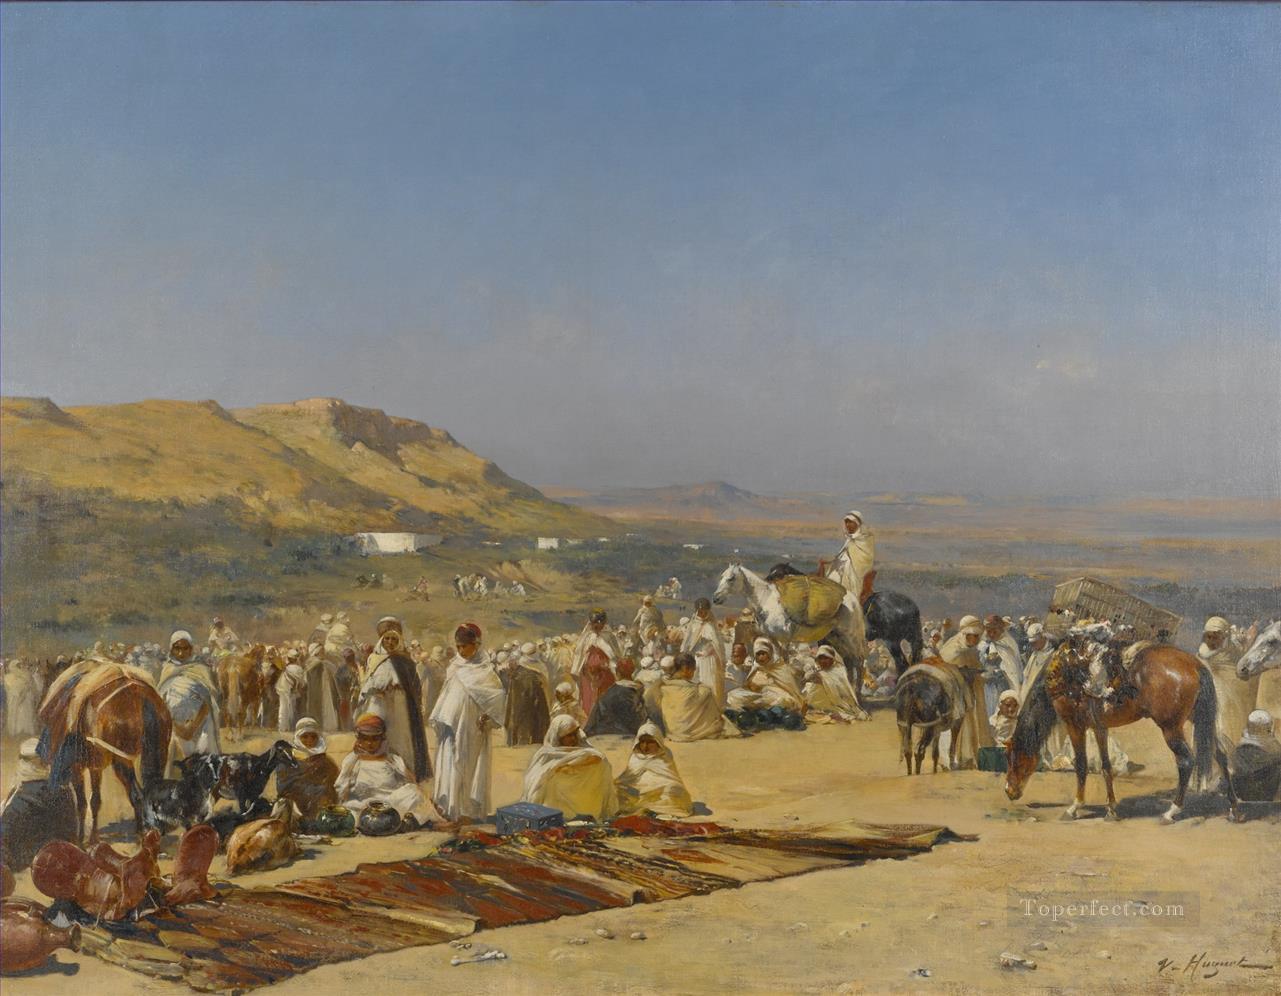 MARKET IN THE DESERT Victor Huguet Araber Oil Paintings